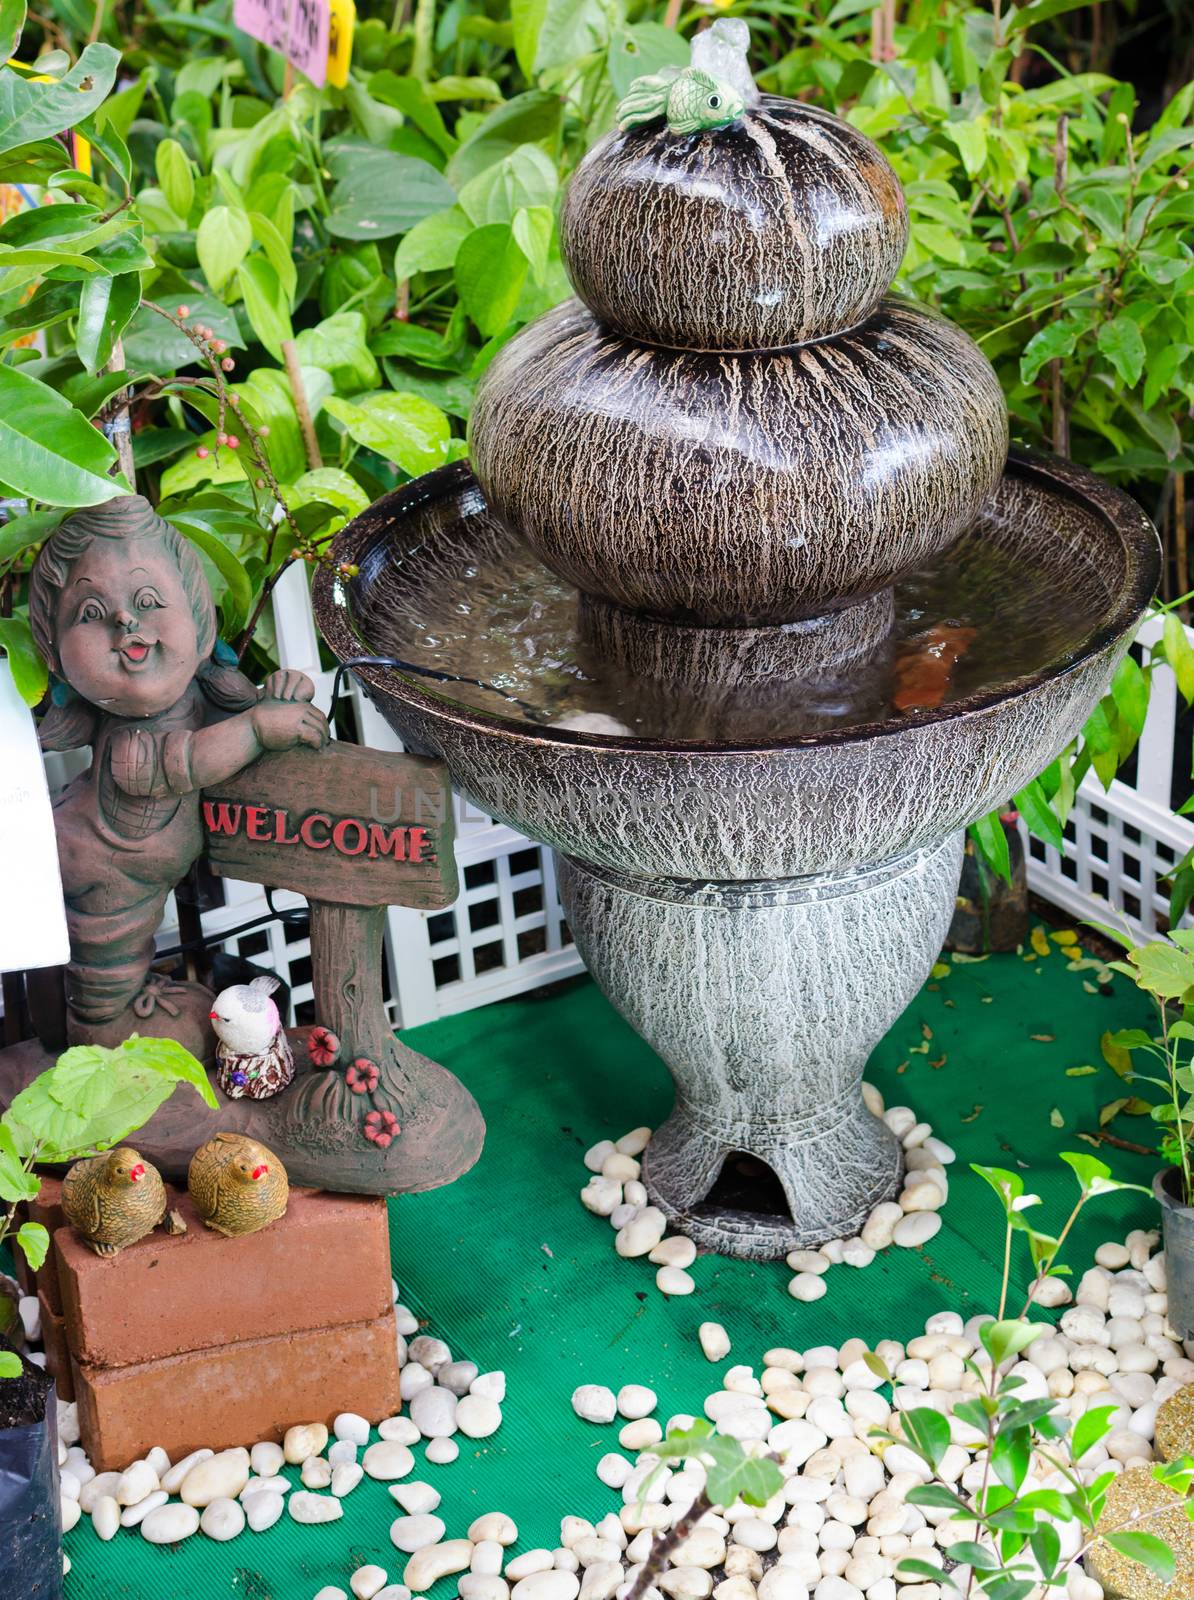 Outdoor Fountain in the Garden by nop16